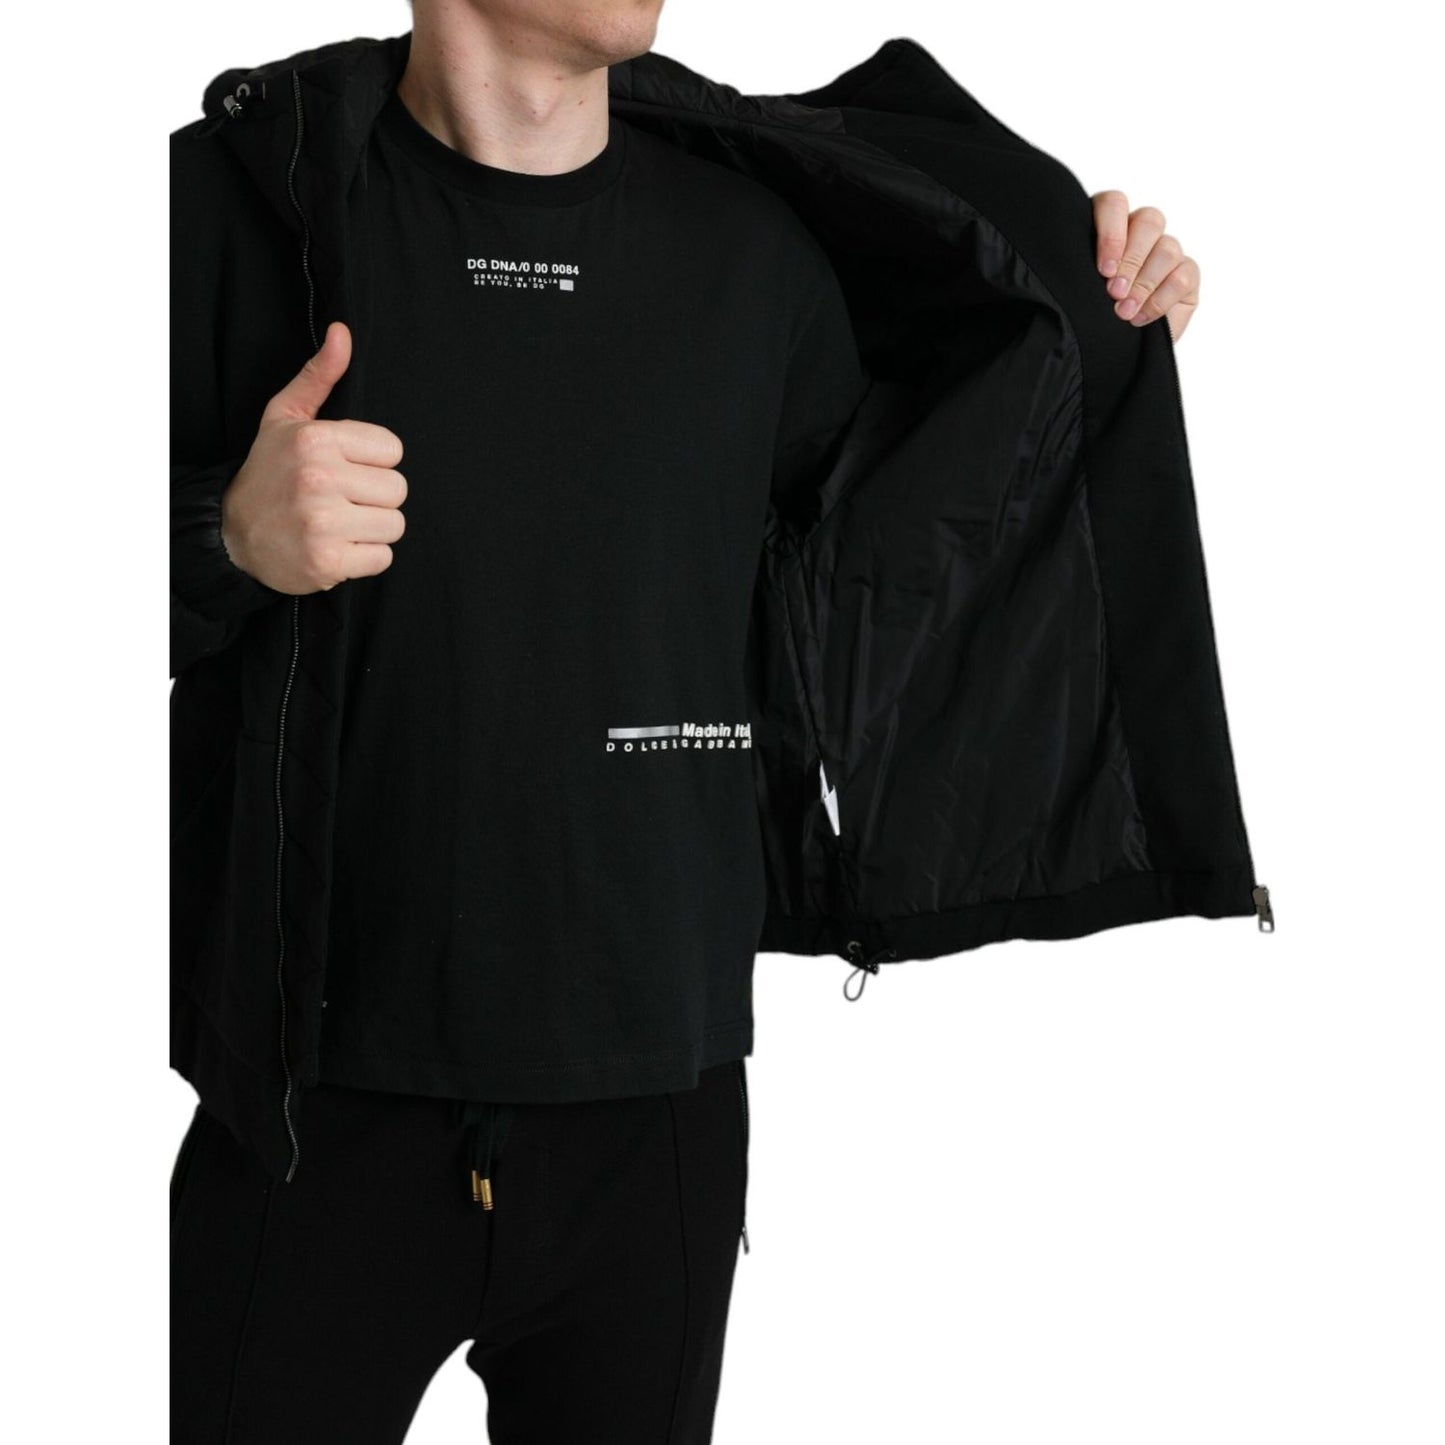 Dolce & Gabbana Elegant Black Bomber Jacket with Hood black-cotton-hooded-logo-bomber-jacket